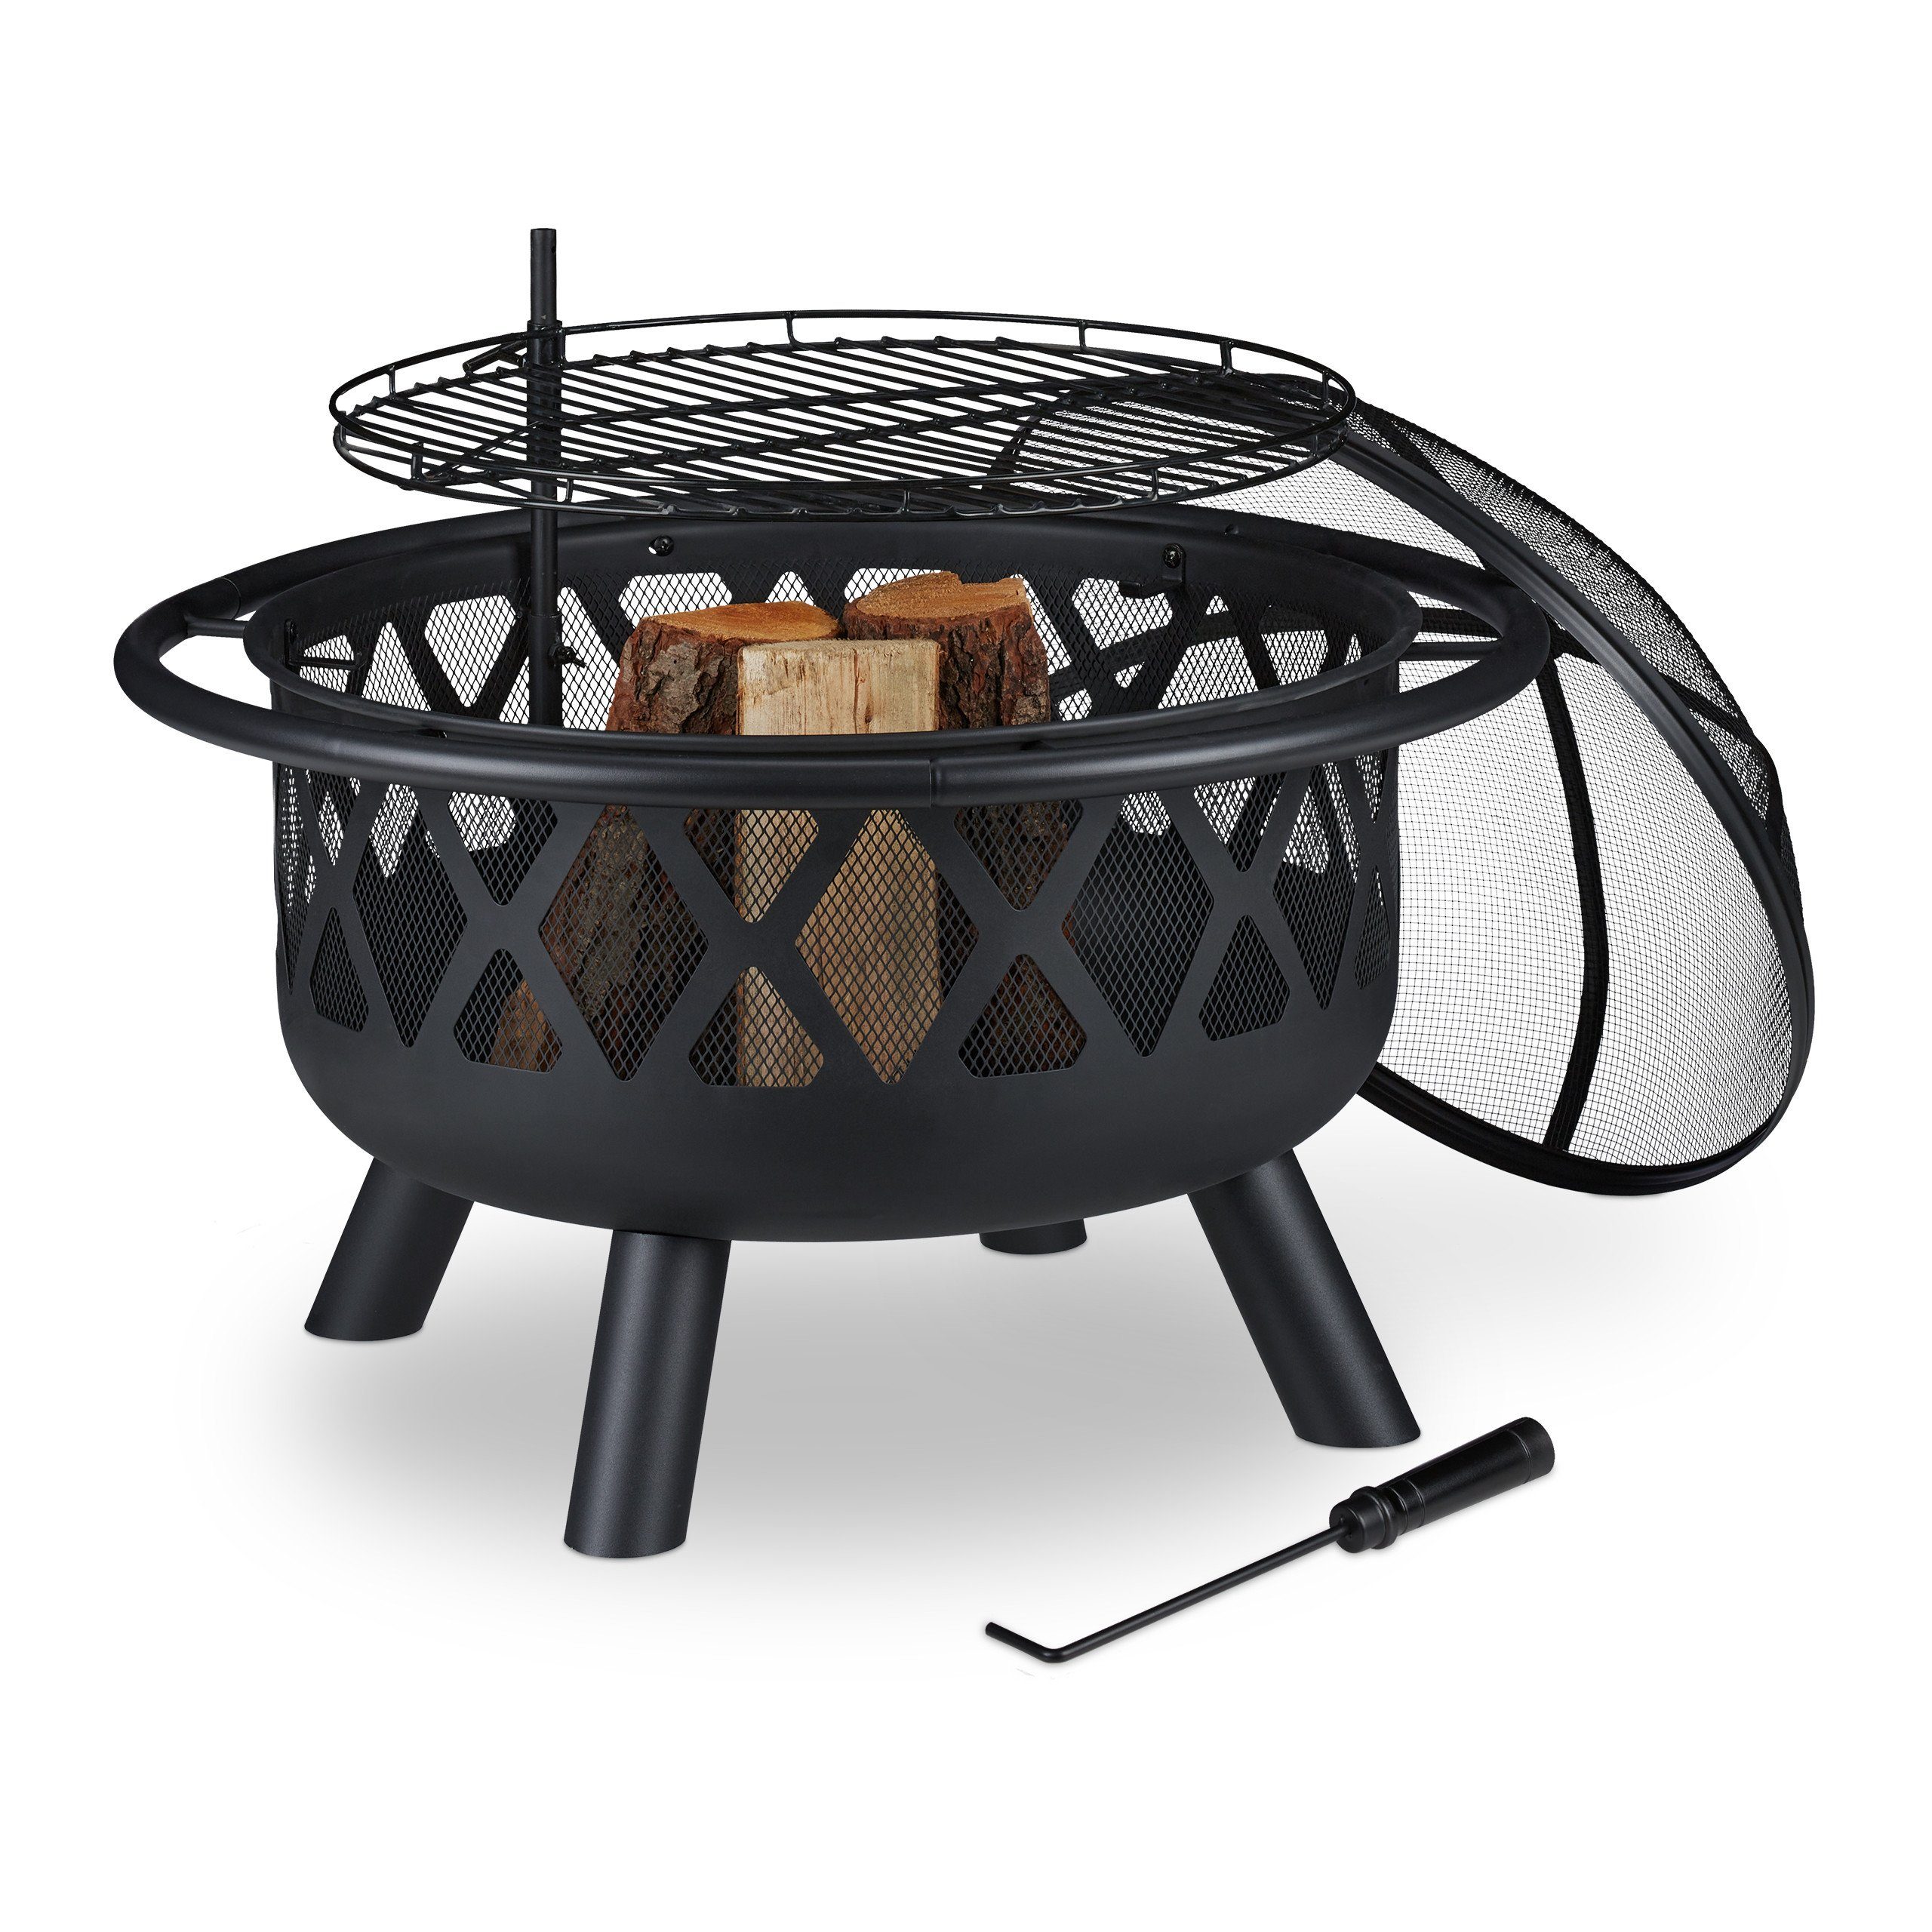 HxD: 40,5 x 58,5 cm Feuerkorb hoher Rand für Flammenschutz Hitzeschild Schürhaken Relaxdays Feuerschale schwarz 